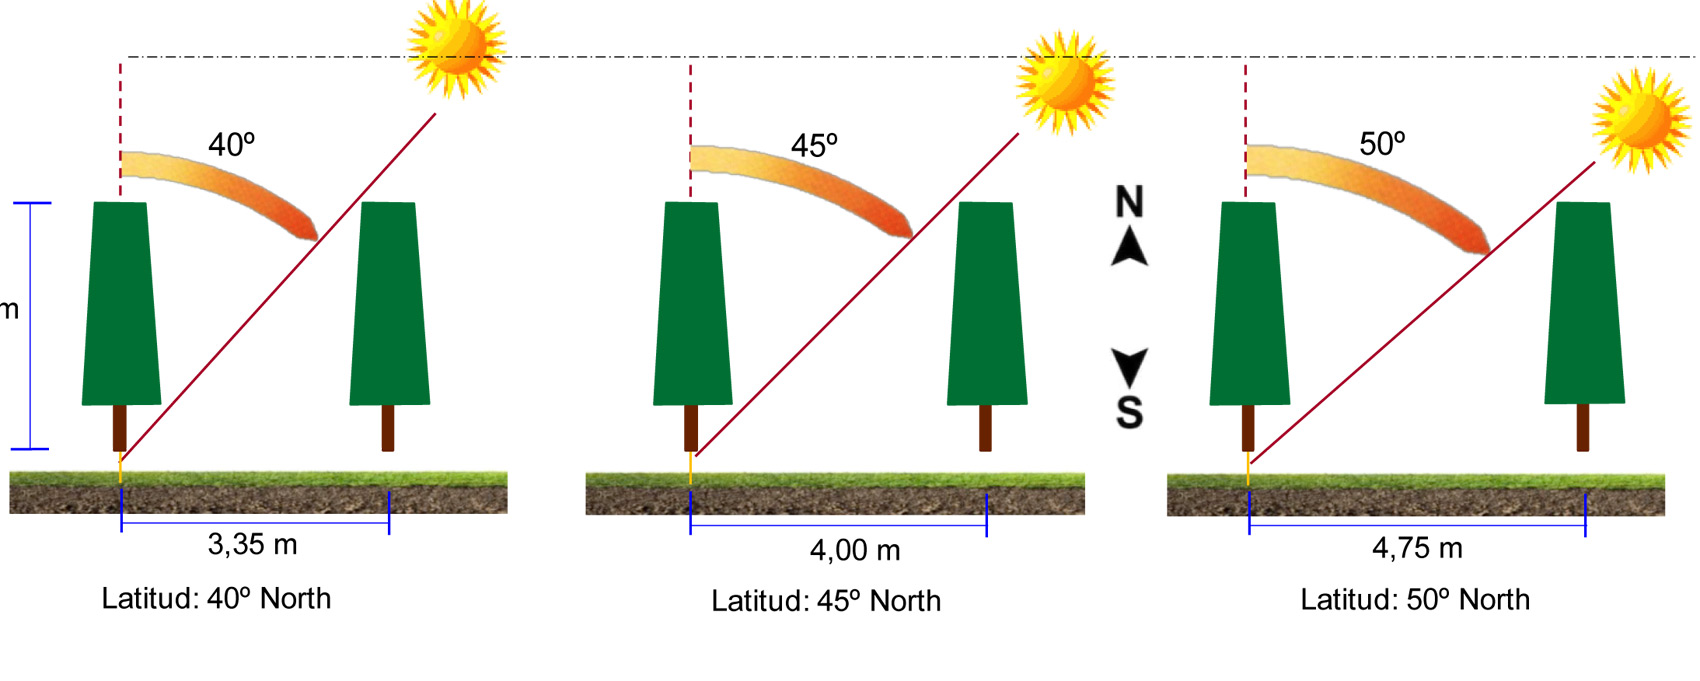 Figura 1: Efecto de la latitud en la distancia entre lneas en plantaciones frutales conducidas en formas planas, bidimensionales o 2D...